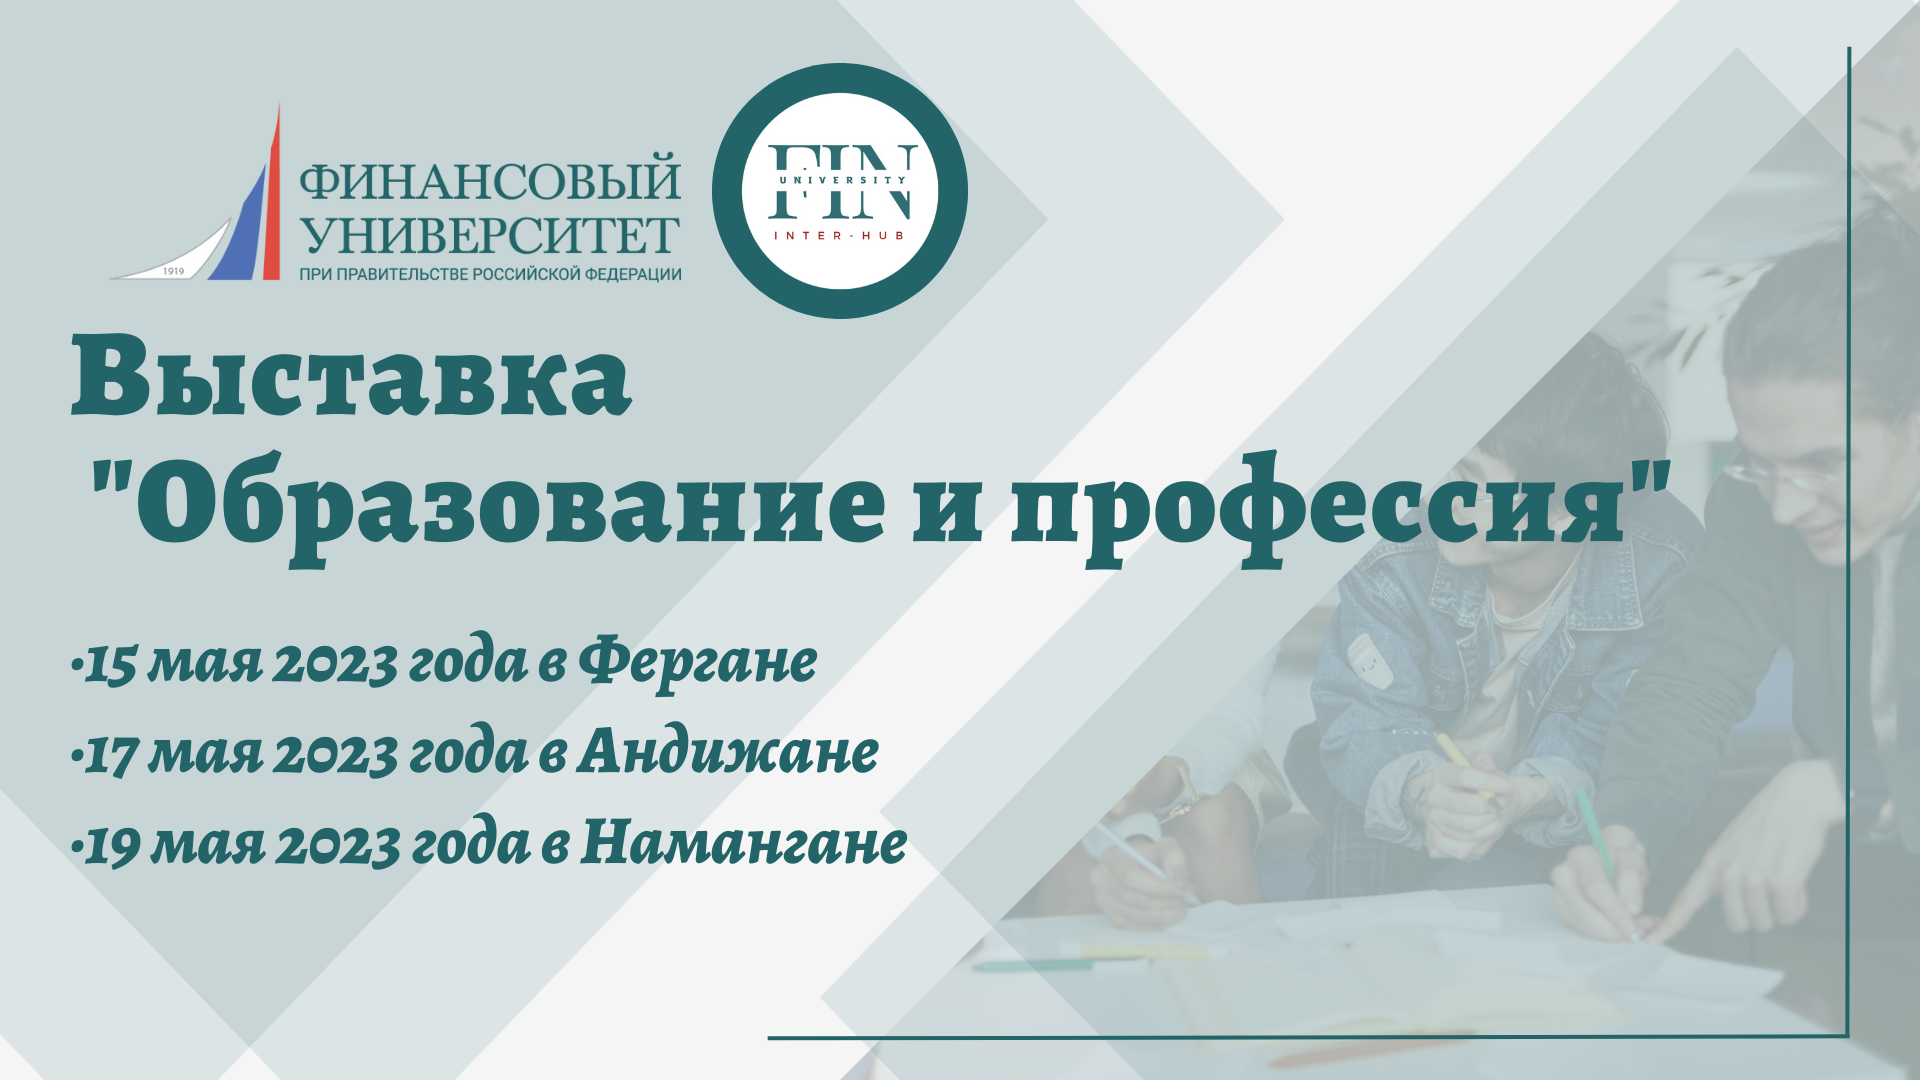 Финансовый университет примет очное участие в образовательной выставке «Образование и Профессия» в Узбекистане